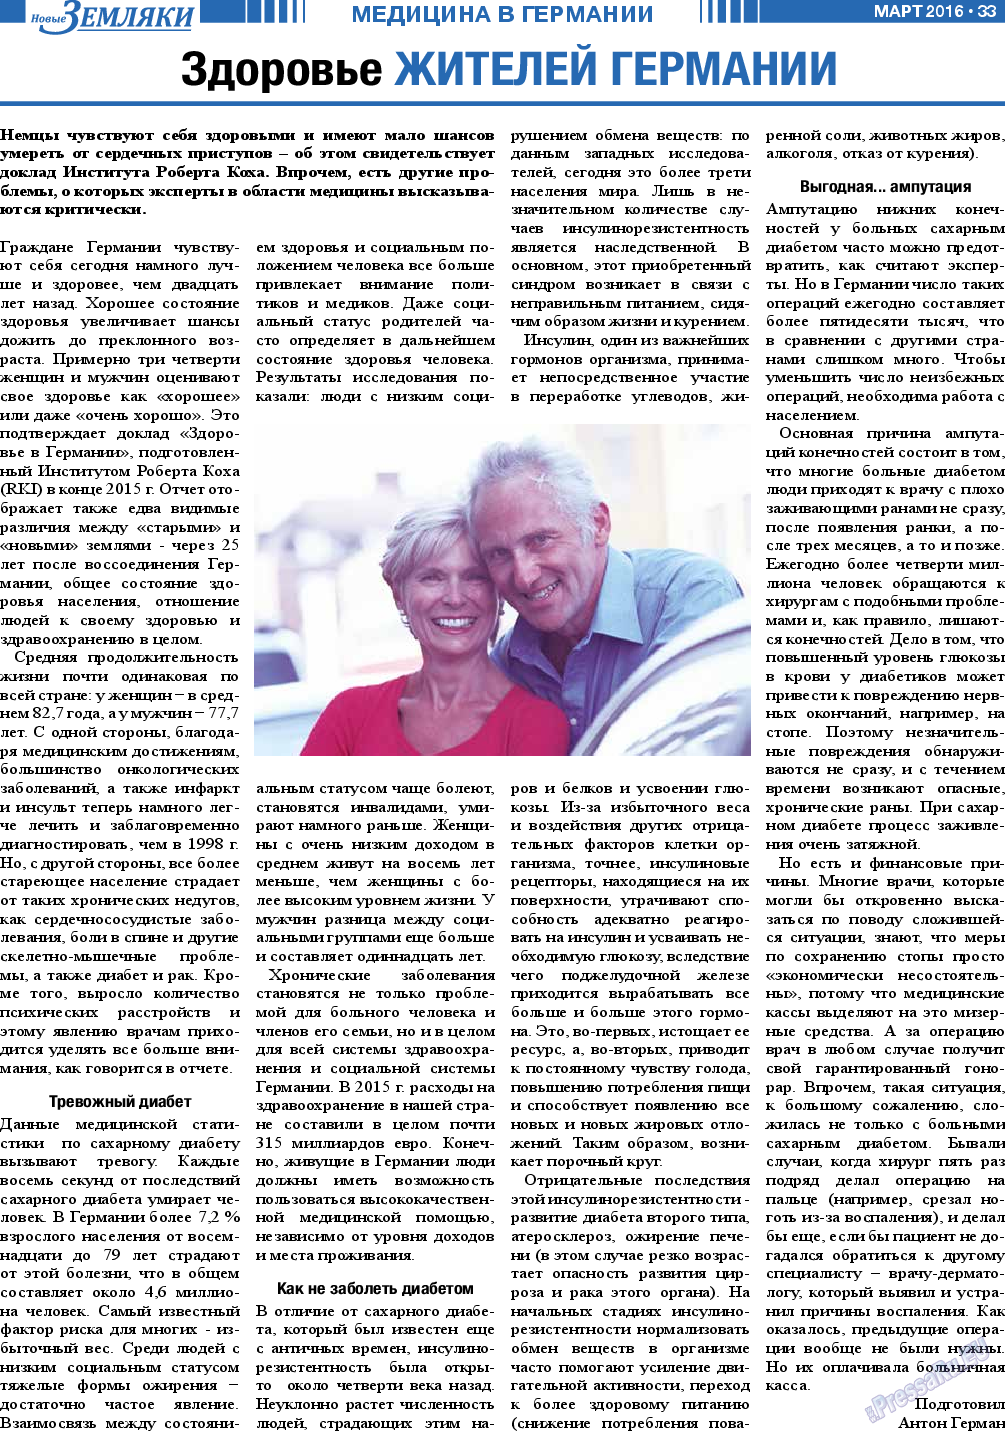 Новые Земляки (газета). 2016 год, номер 3, стр. 33